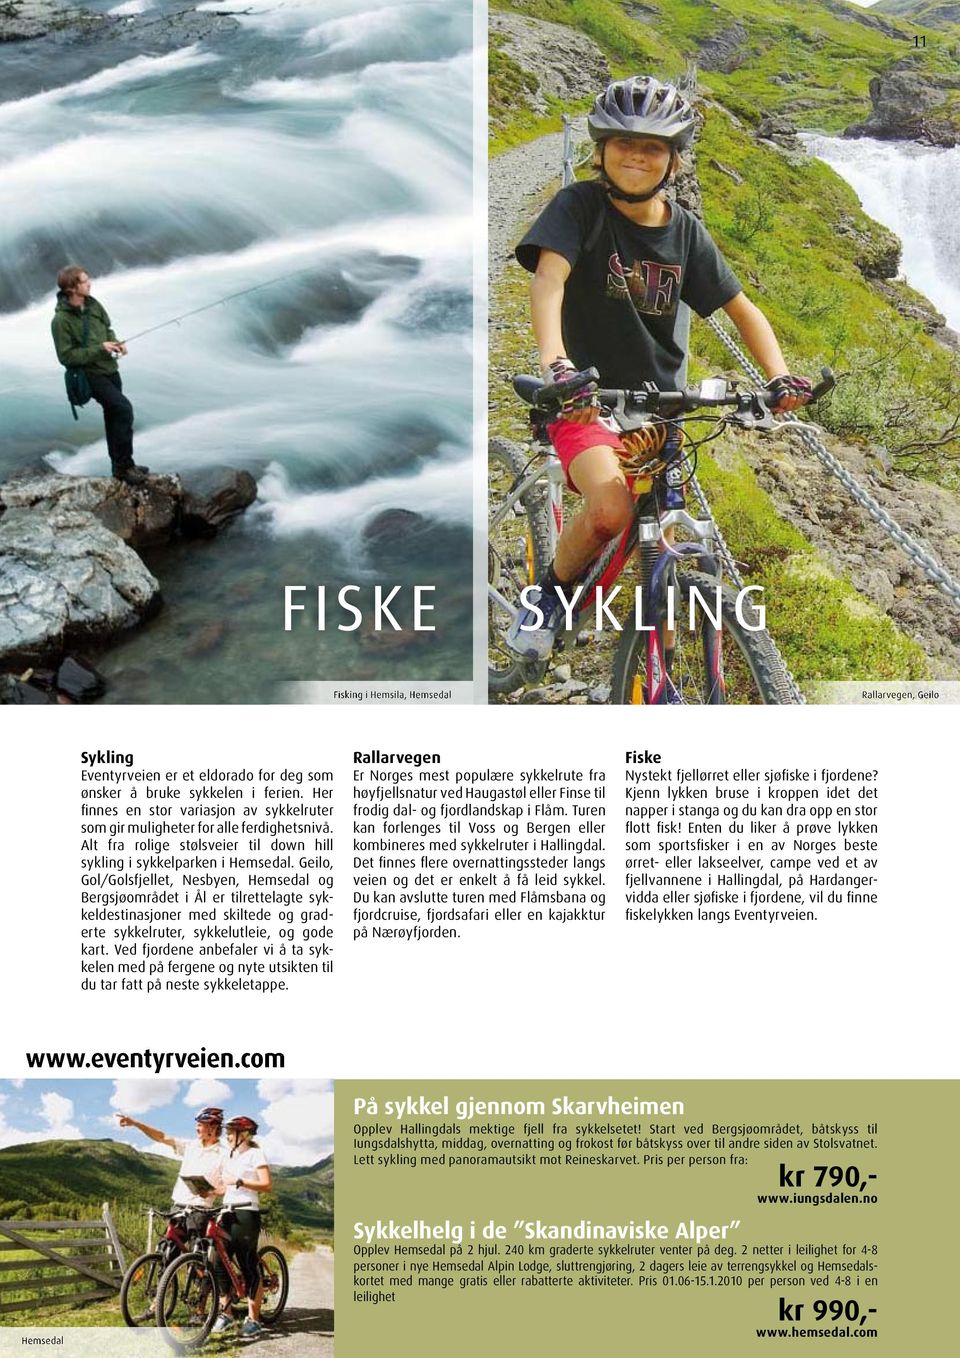 Geilo, Gol/Golsfjellet, Nesbyen, Hemsedal og Bergsjøområdet i Ål er tilrettelagte sykkeldestinasjoner med skiltede og graderte sykkelruter, sykkelutleie, og gode kart.